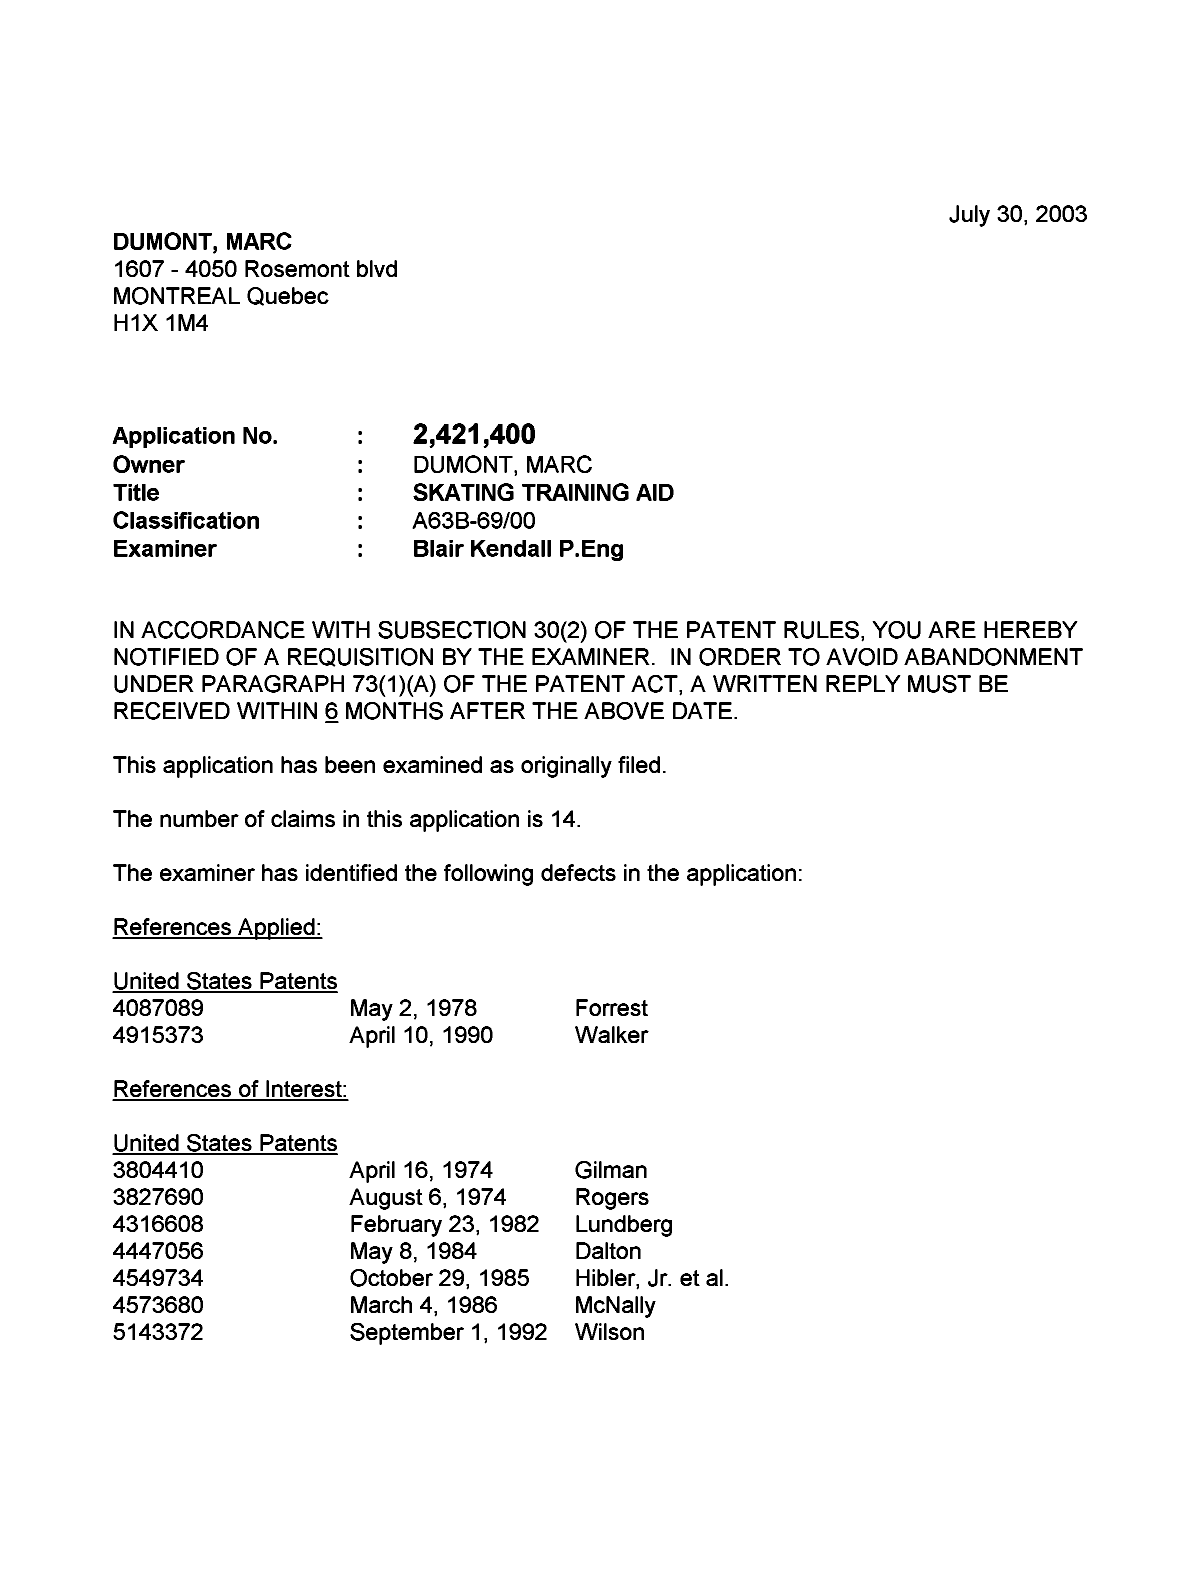 Document de brevet canadien 2421400. Poursuite-Amendment 20021230. Image 1 de 4